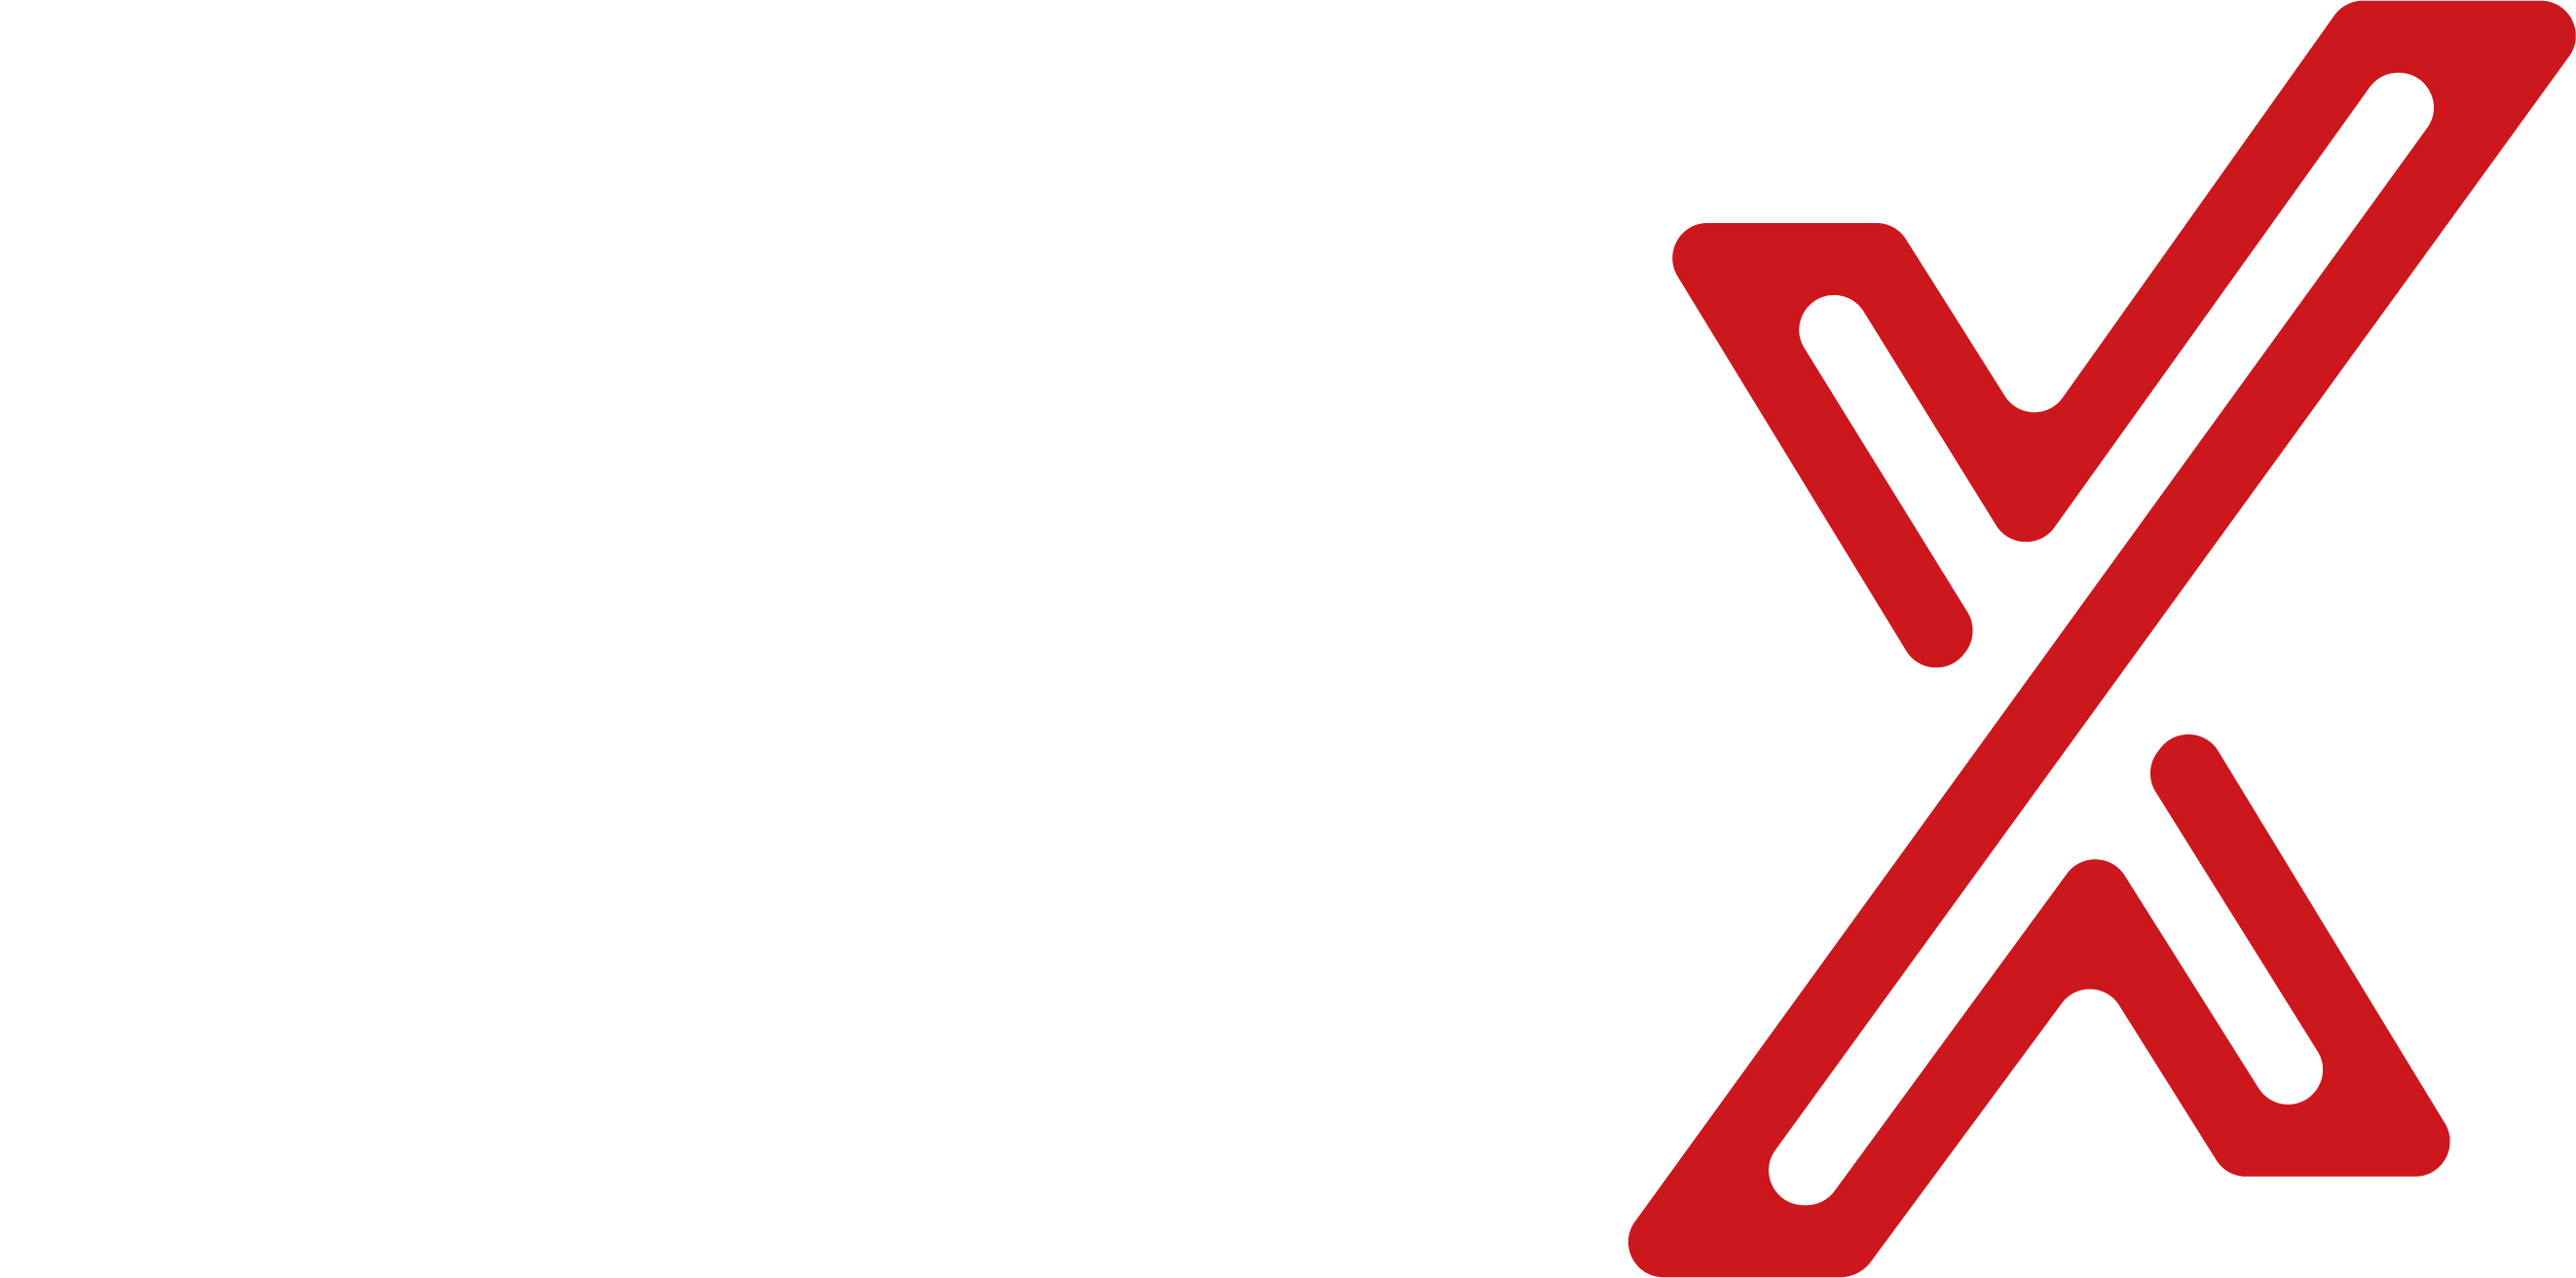 EduX Digital Platform